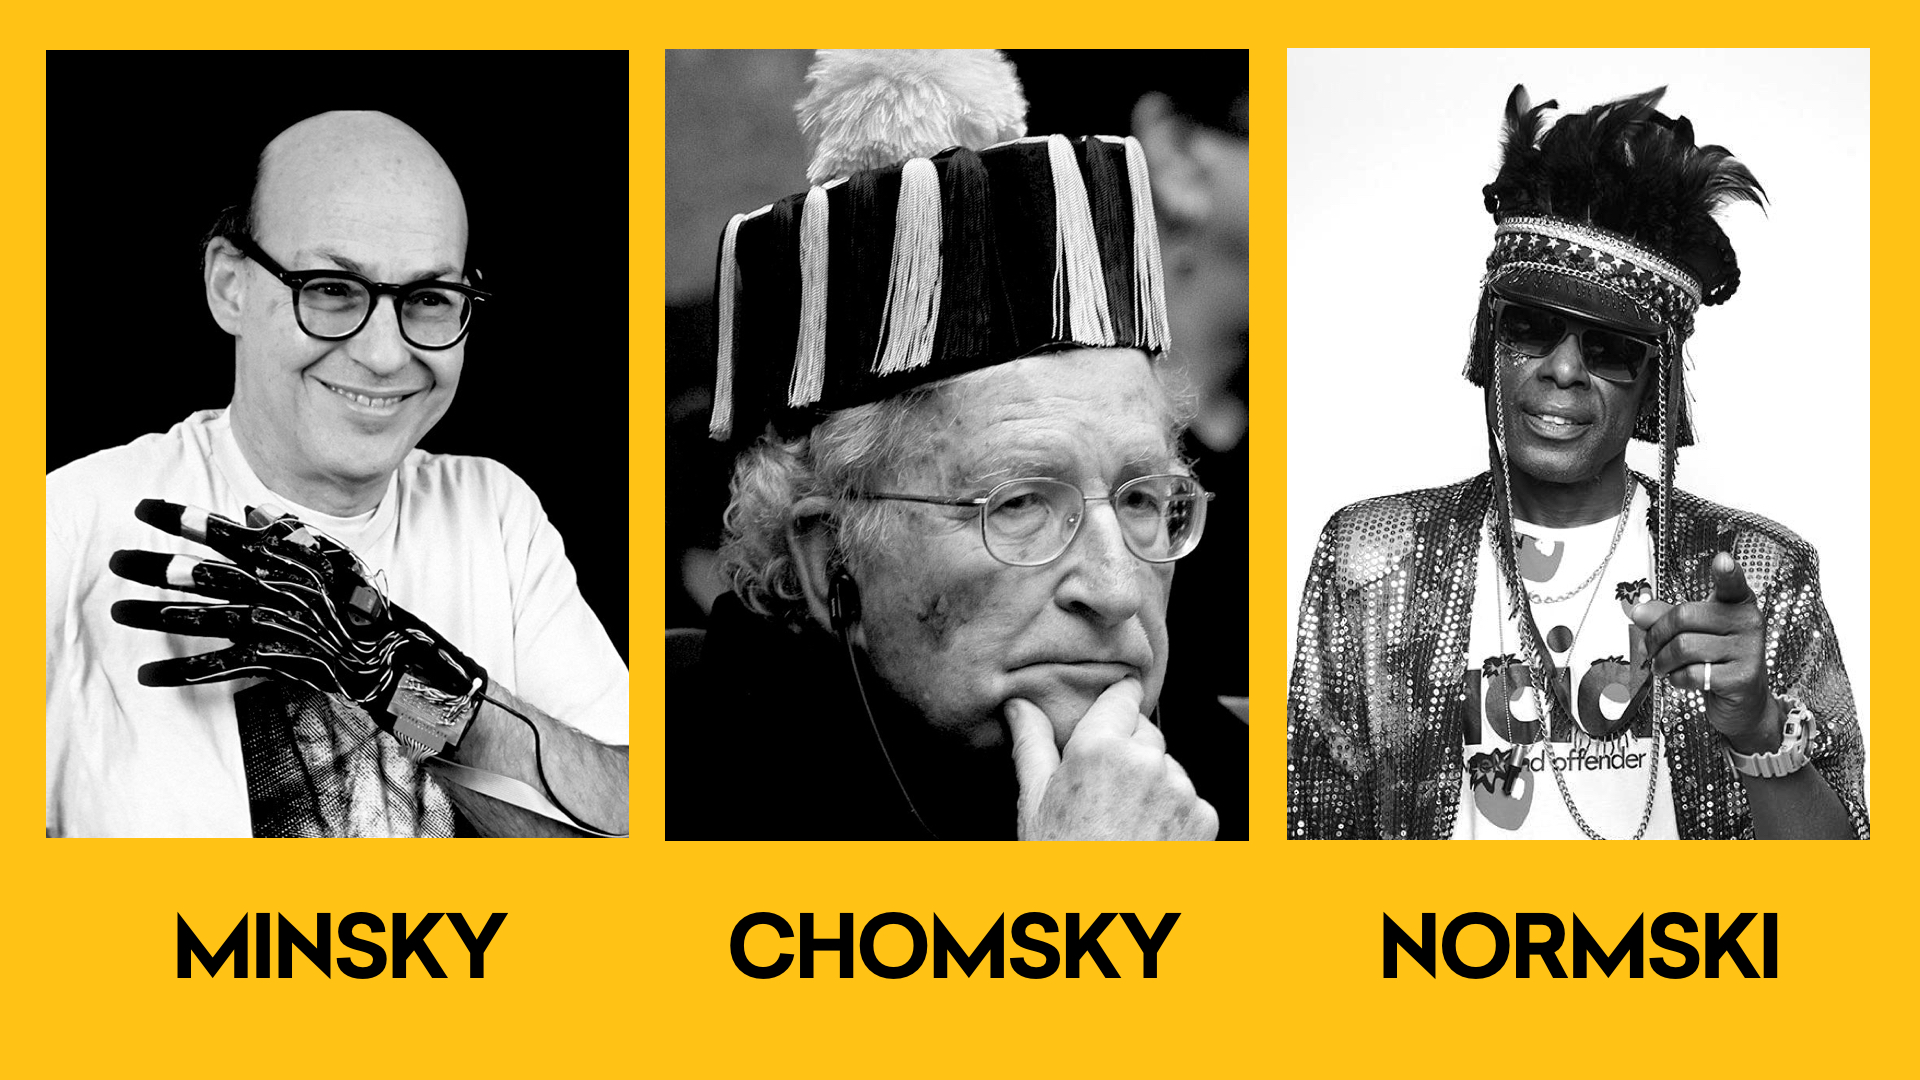 Minsky, Chomsky, Normski